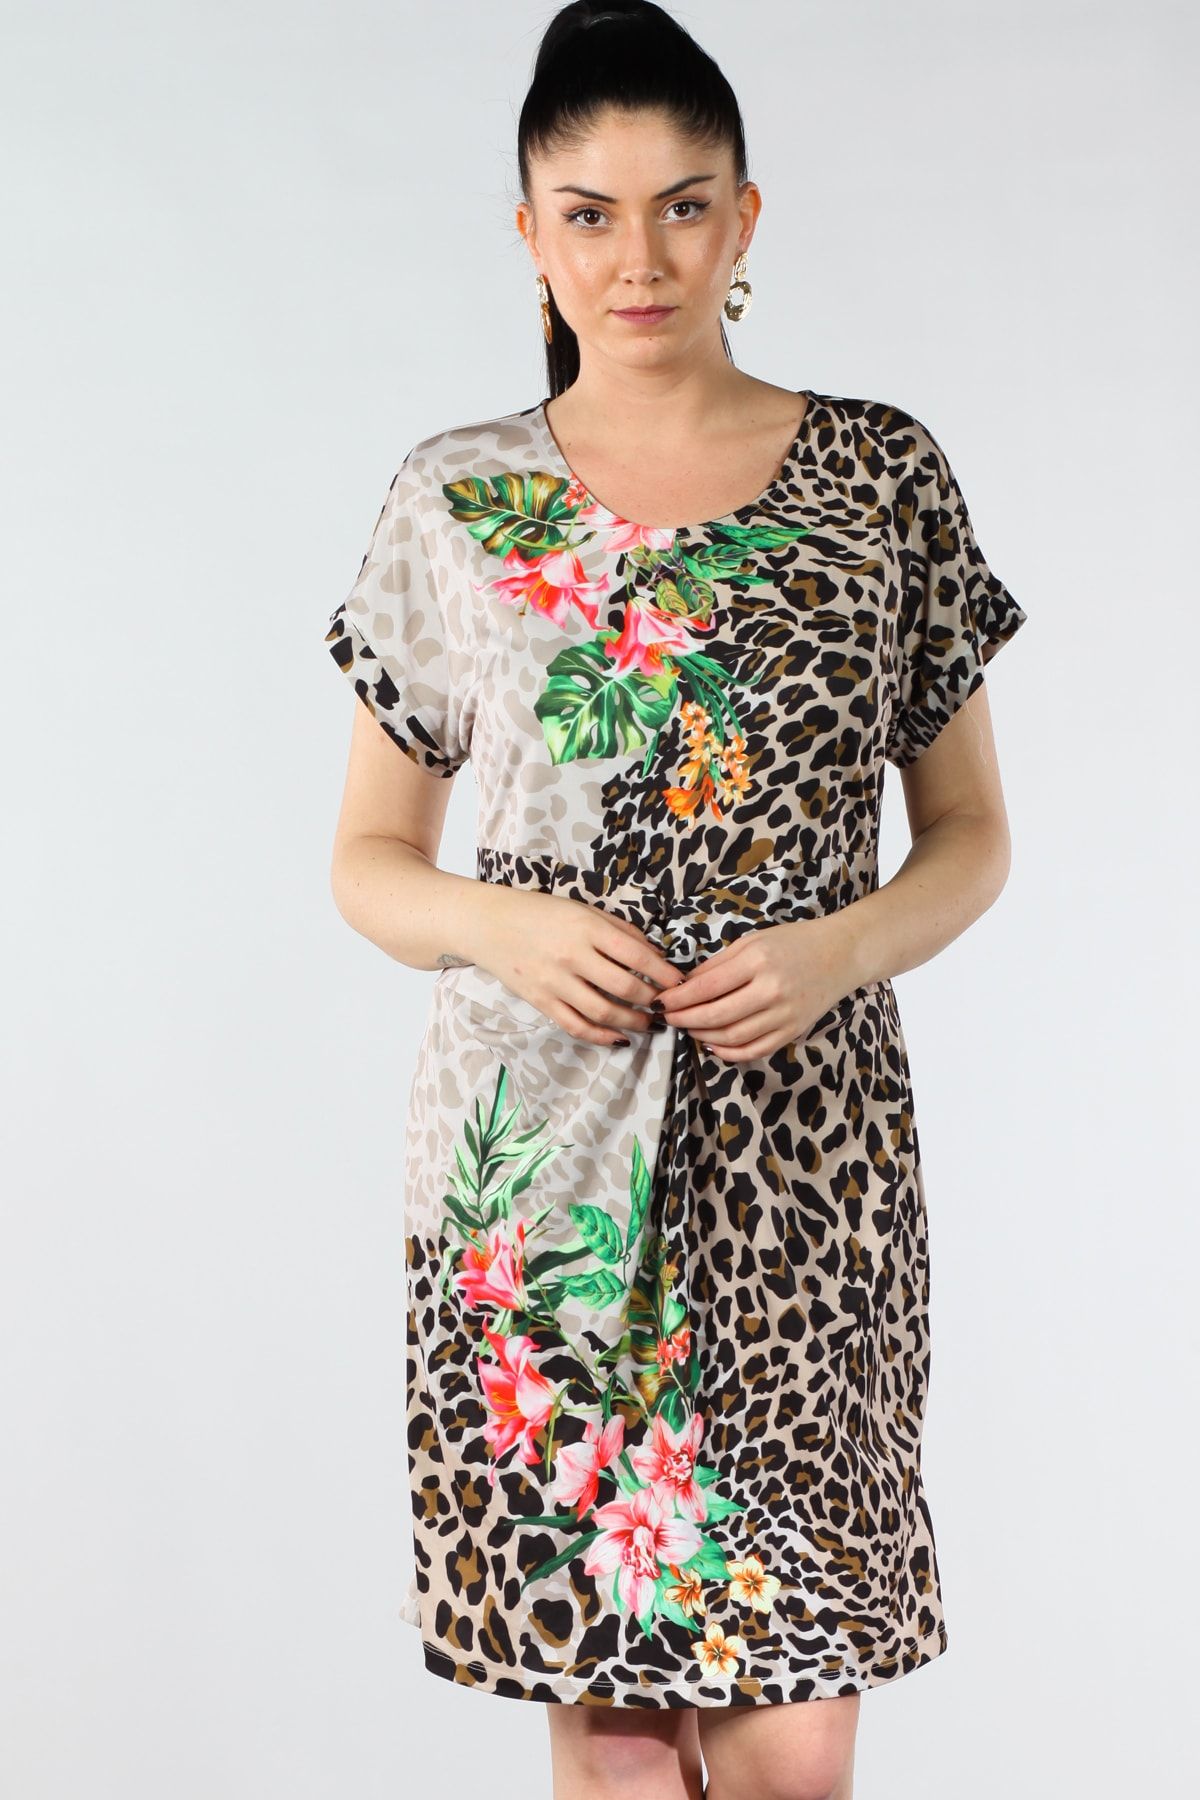 Şans Tekstil Kadın Leopar Ve Çiçek Desenli Ön Detaylı Elbise 85n7062